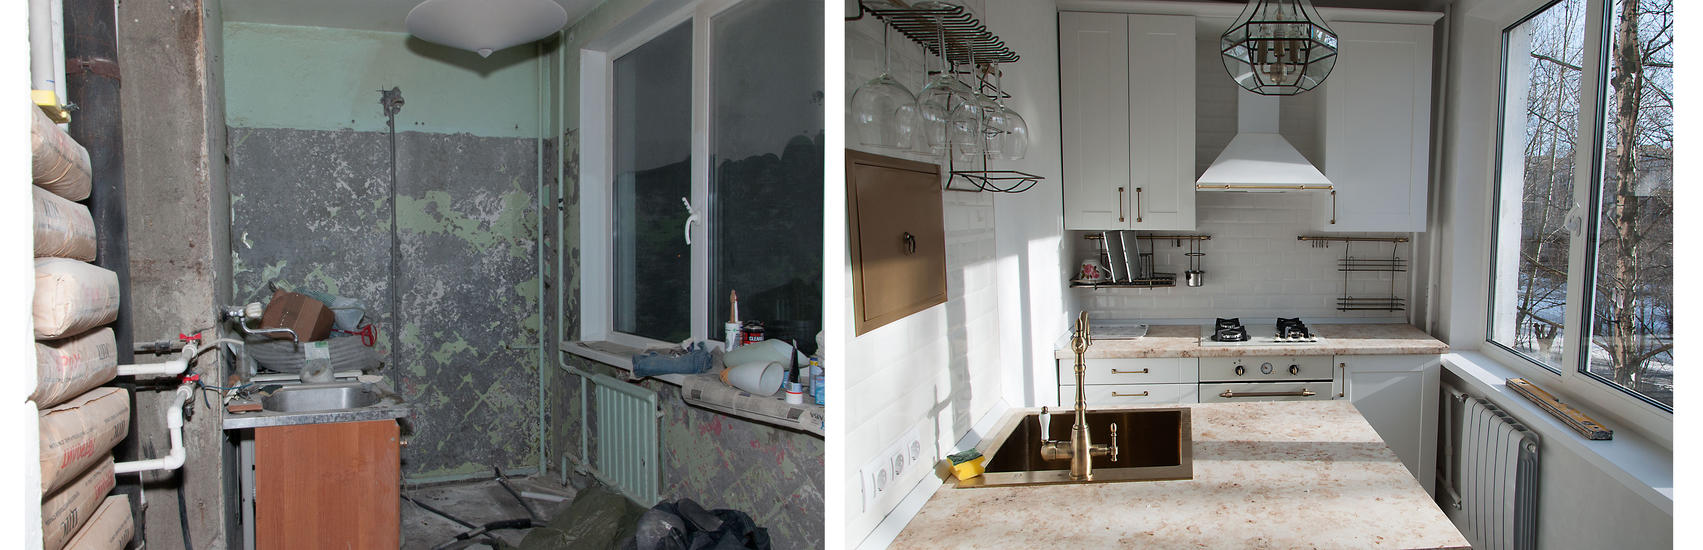 Фото до ремонта и после ремонта квартиры: 7 «убитых» квартир до и после ремонта — INMYROOM